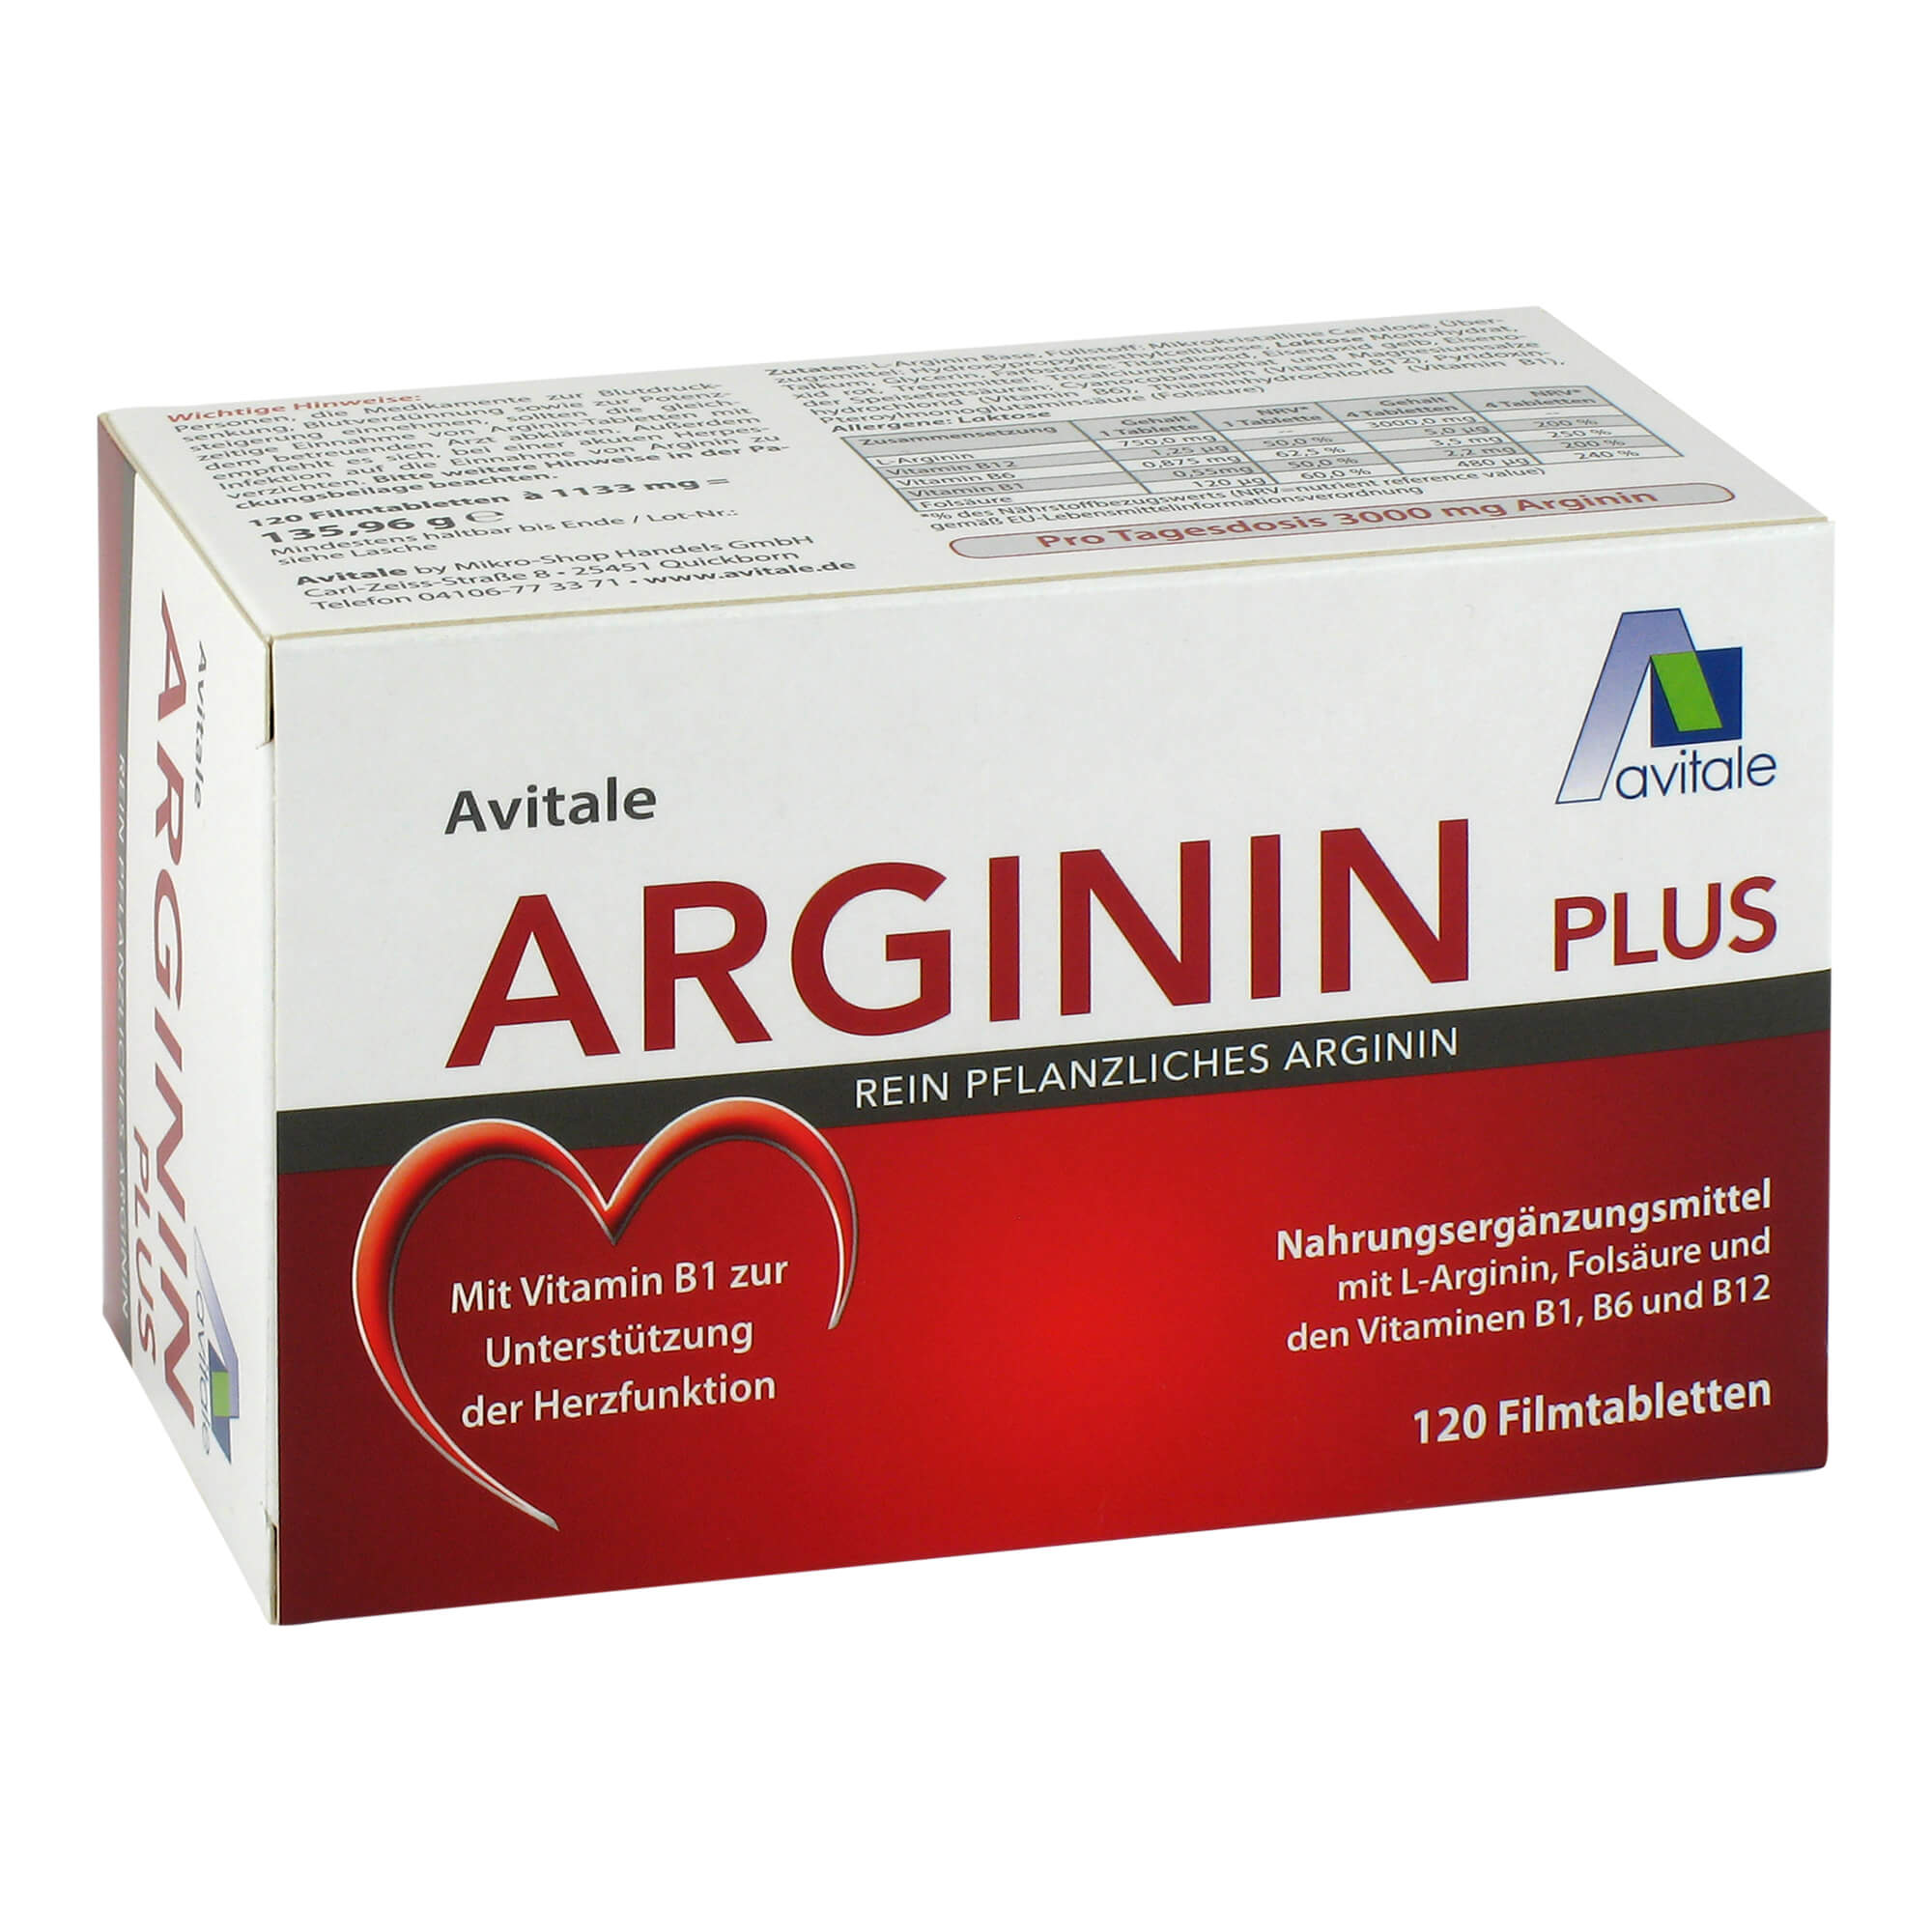 Nahrungsergänzungsmittel mit L-Arginin, Folsäure und den Vitaminen B1, B6 und B12.